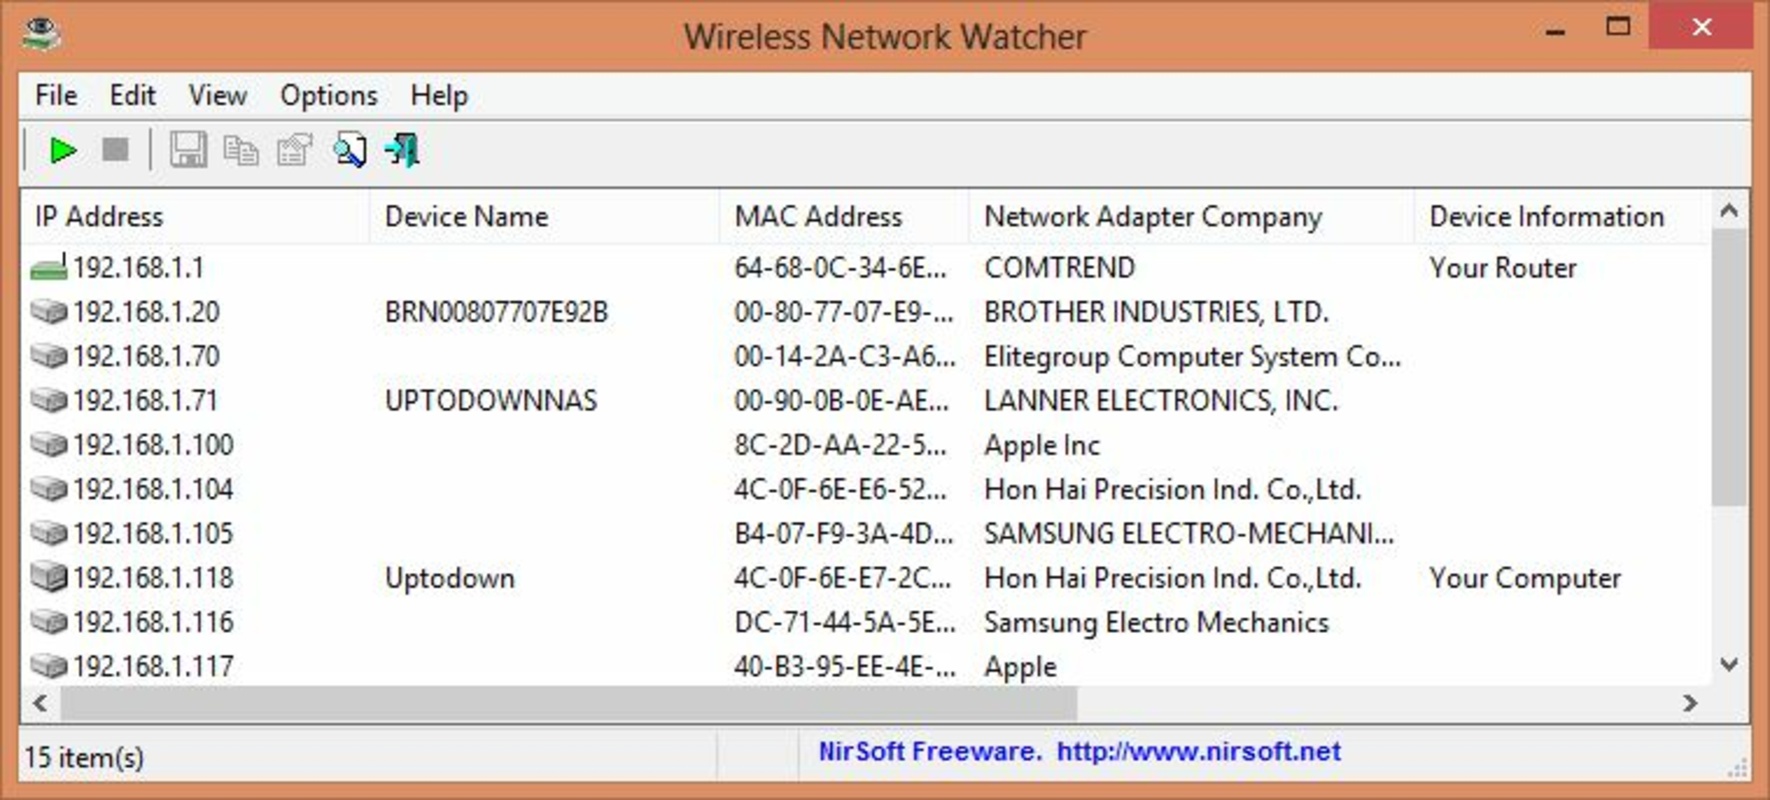 Wireless Network Watcher 2.40 feature